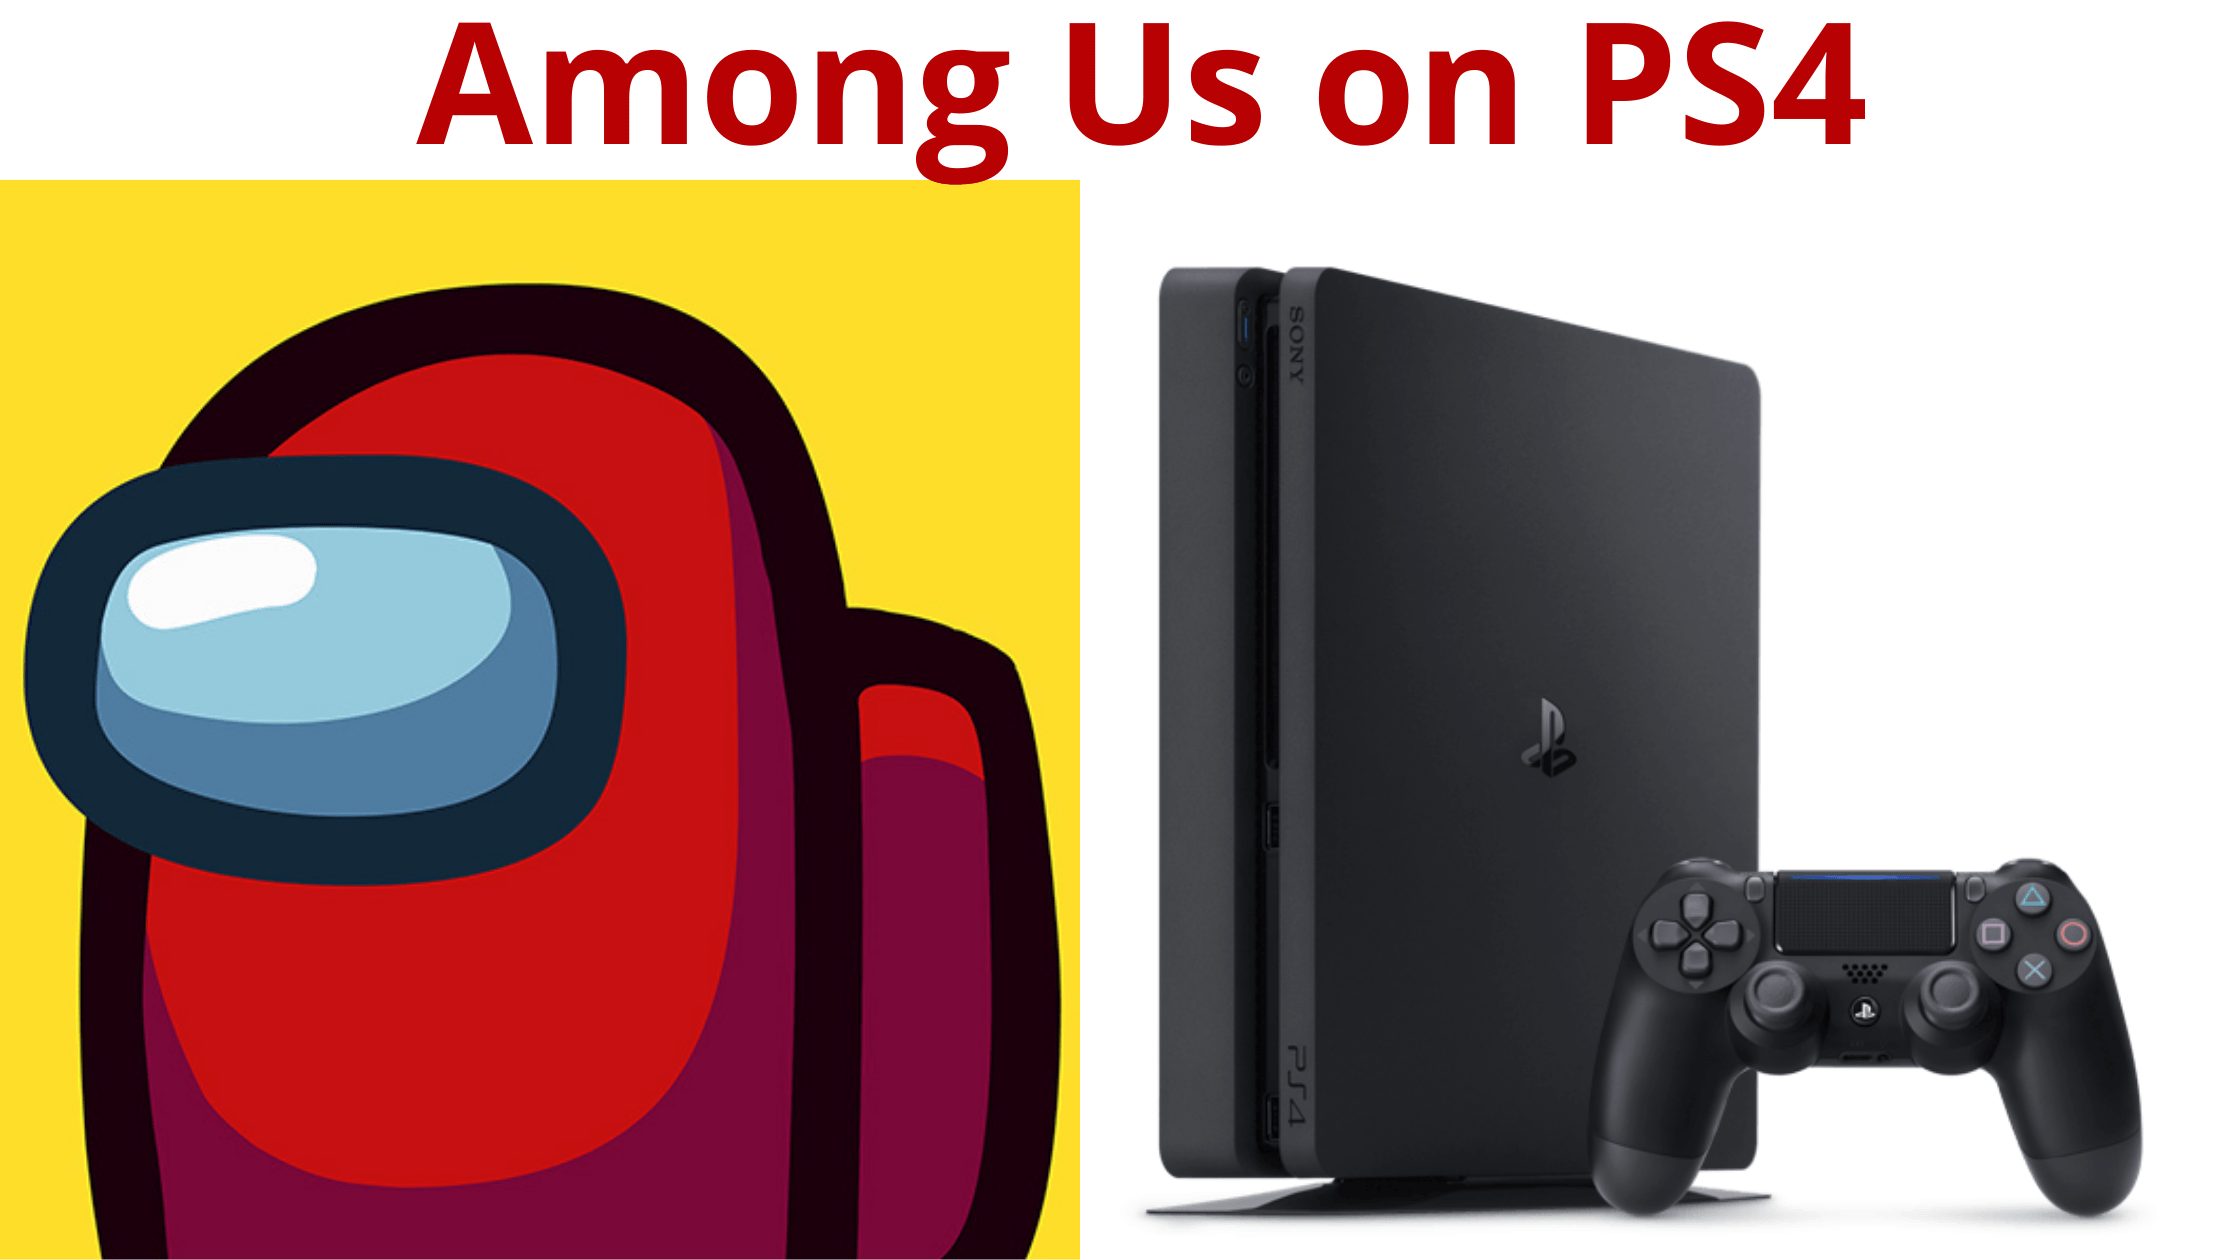 Among Us on PS4